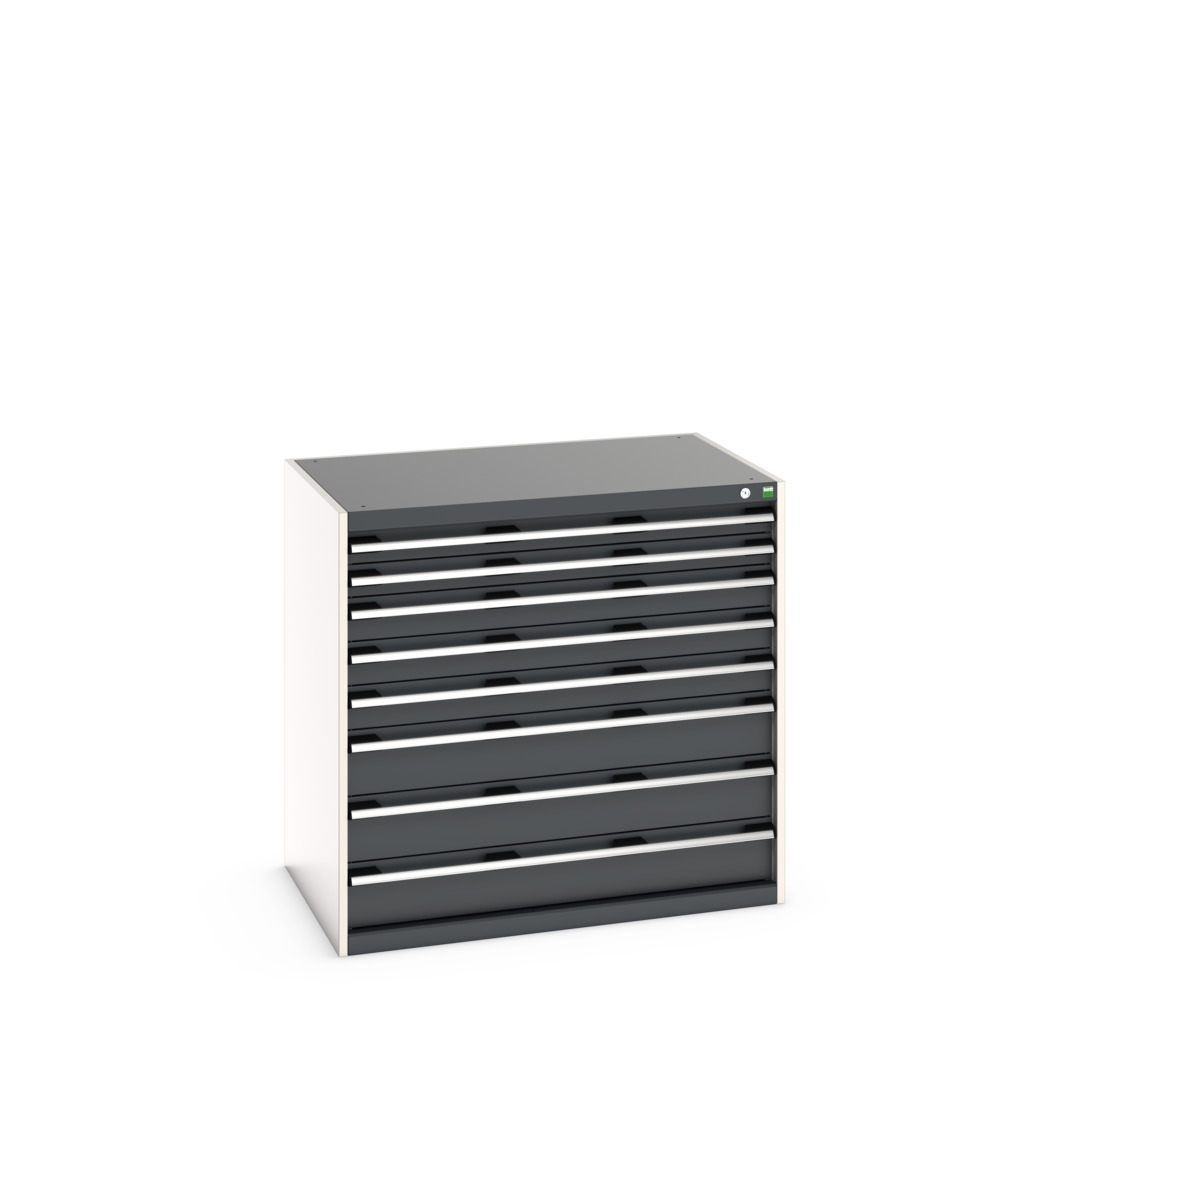 40029025.19V - cubio drawer cabinet